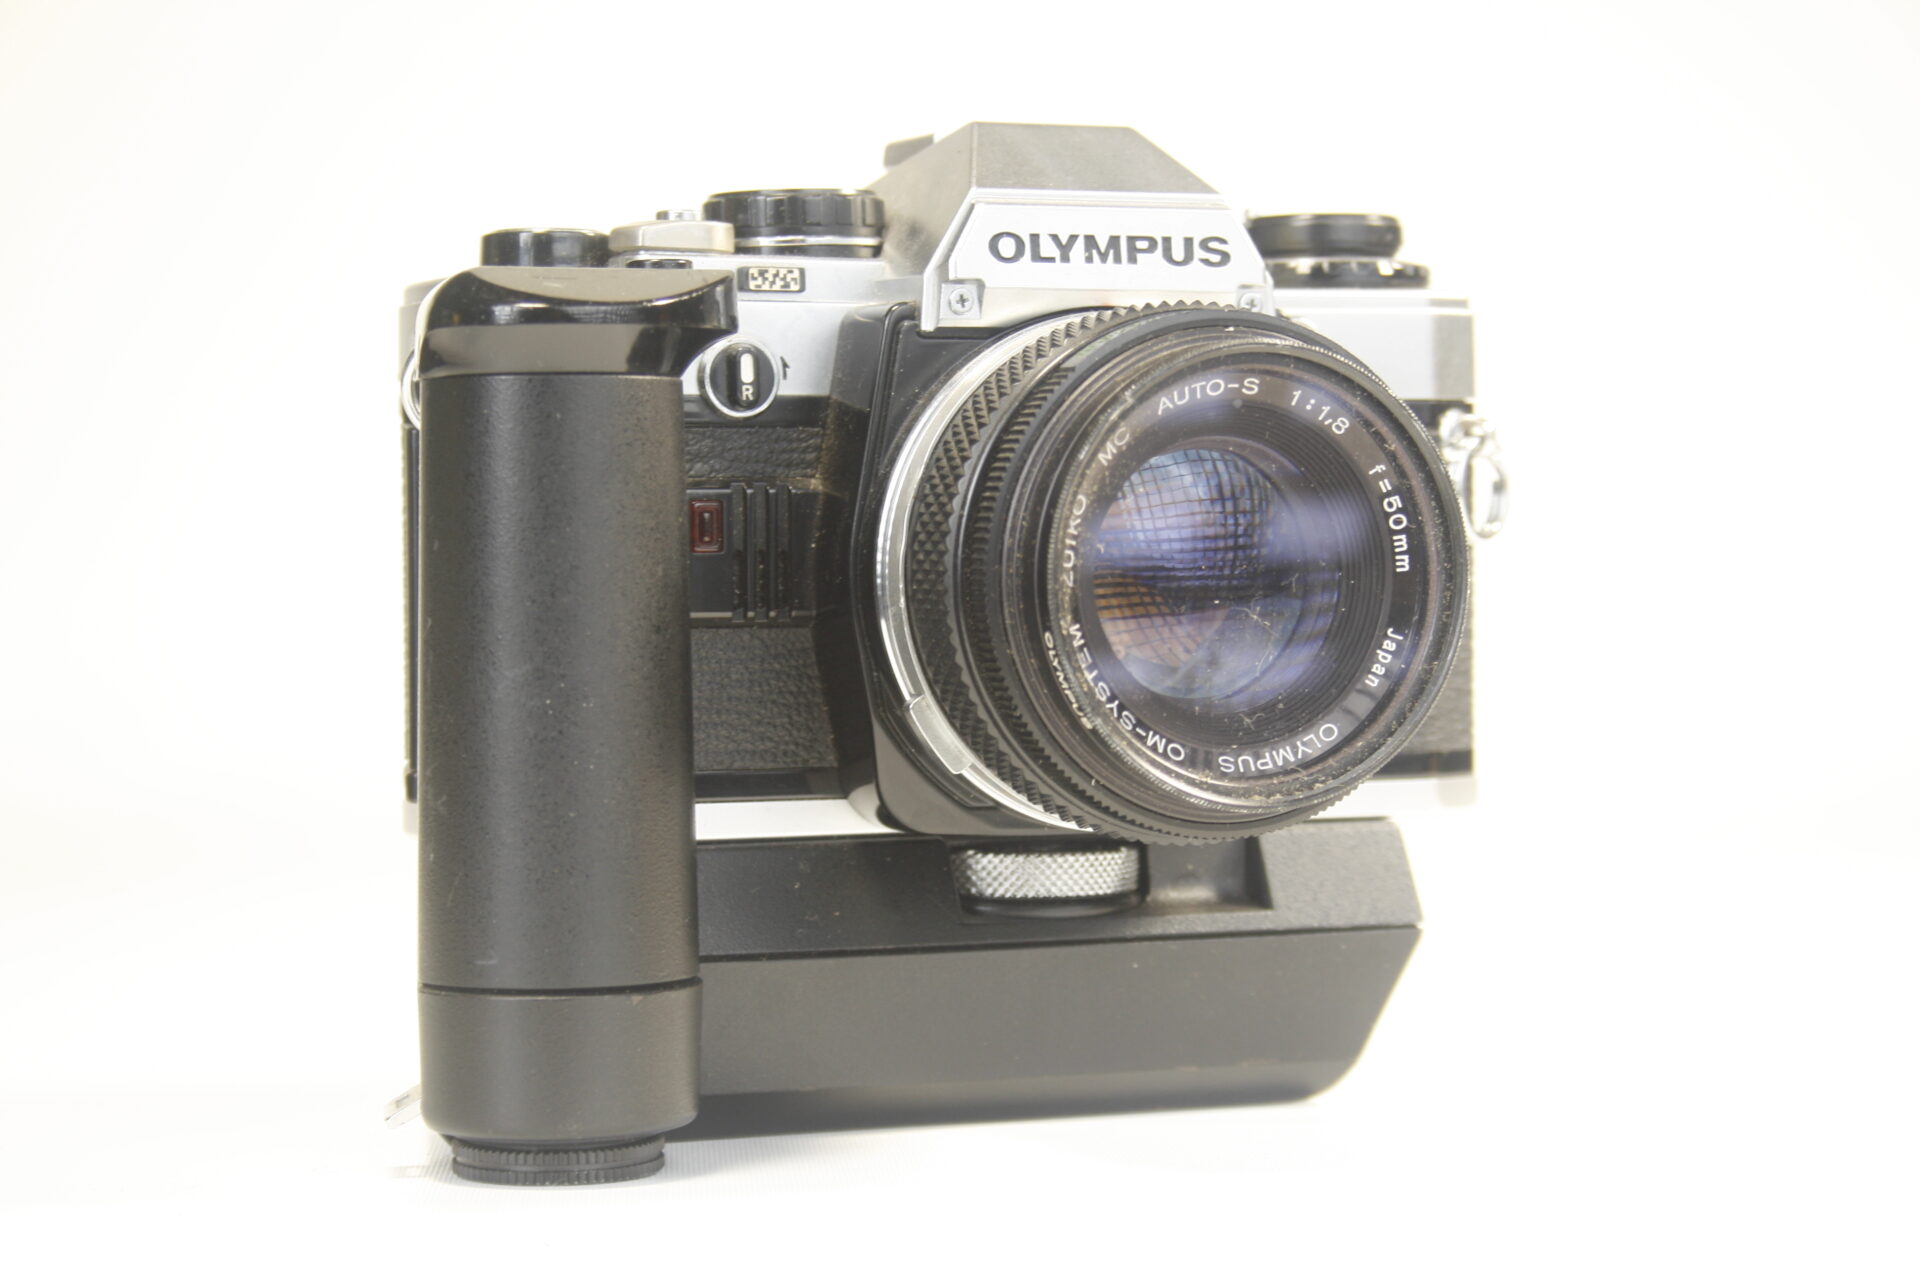 Olympus OM10 met battery pack. 35mm SLR camera. 1979. Japan.